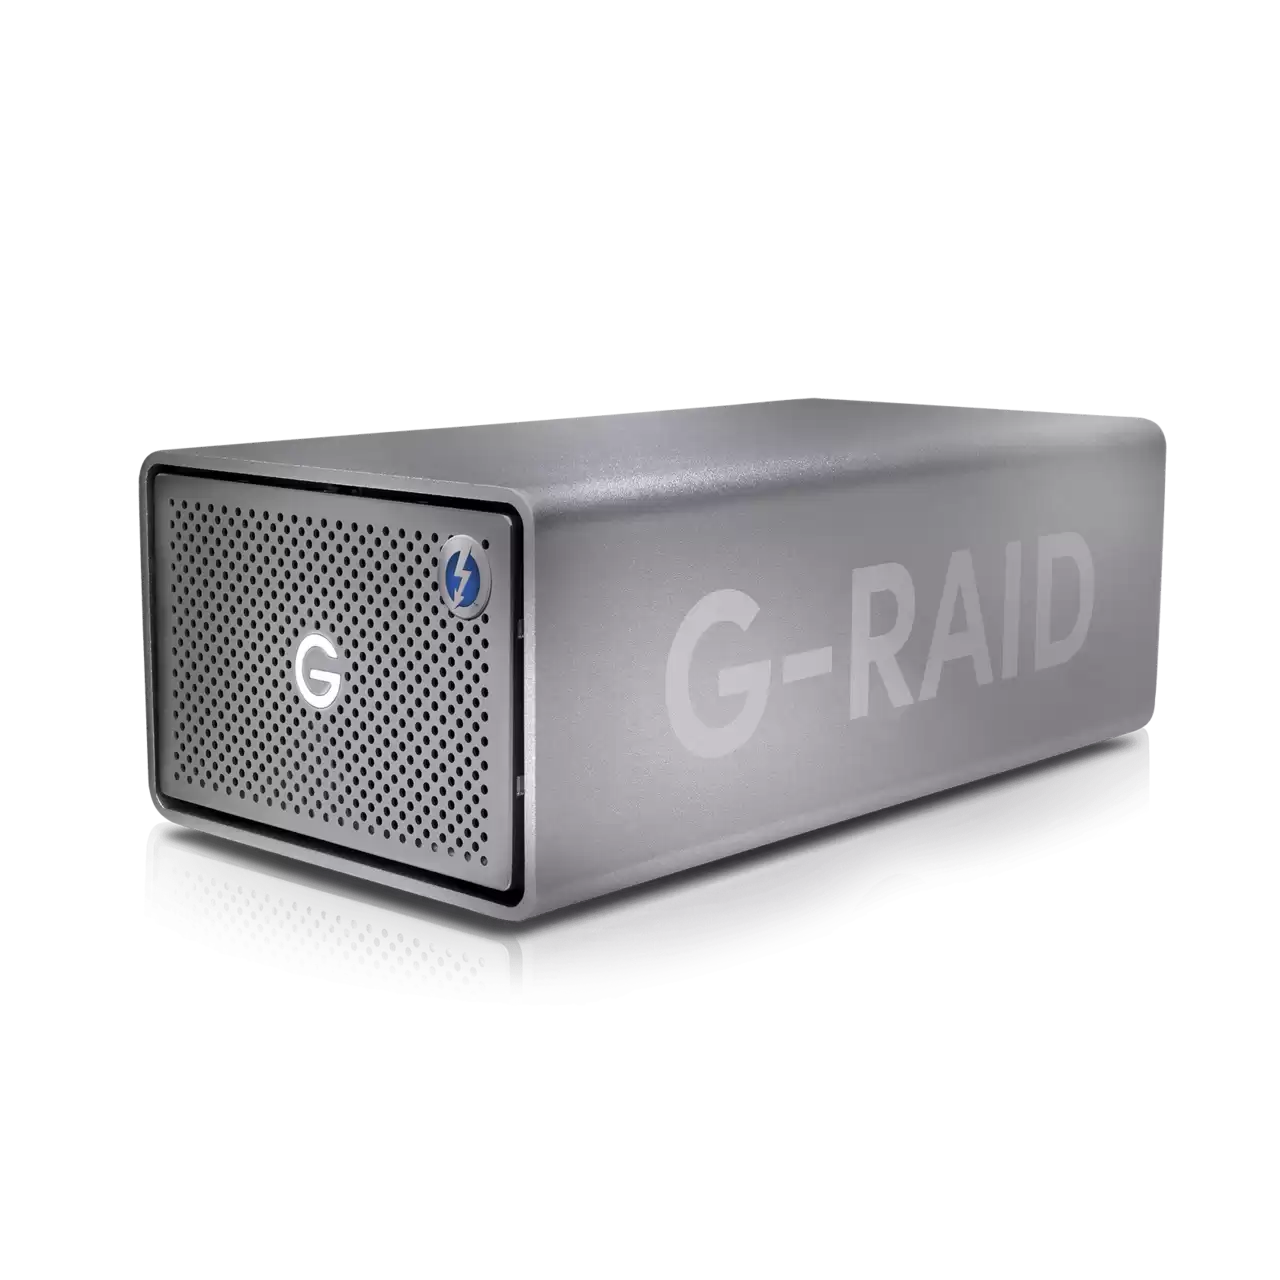 G-RAID 2 12TB